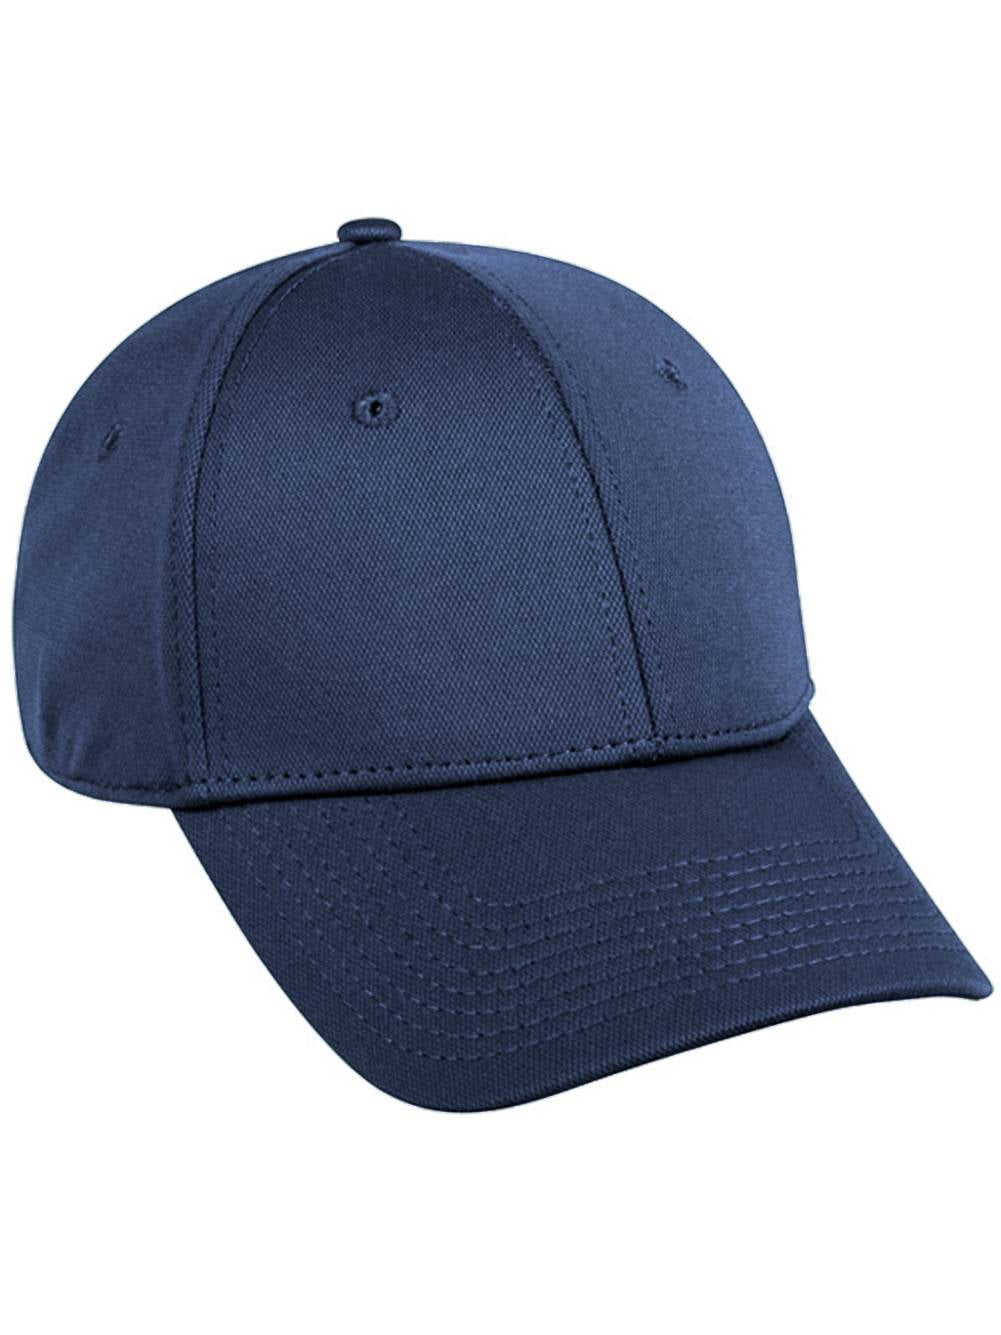 Flex Fitted Baseball Cap Hat - Navy Blue, Large-XL - Walmart.com